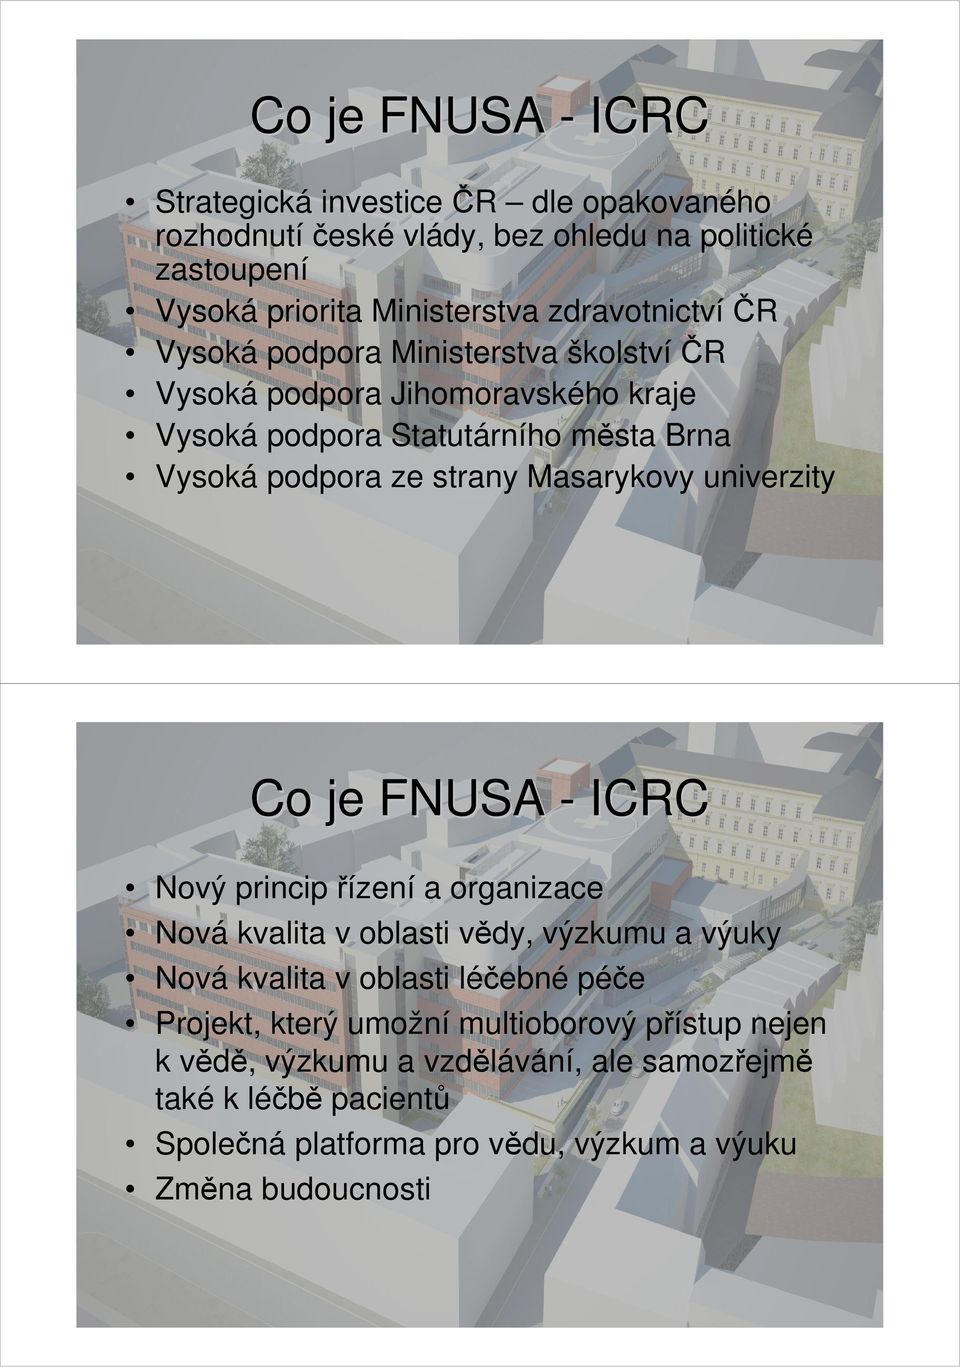 Masarykovy univerzity Co je FNUSA - ICRC Nový princip řízení a organizace Nová kvalita v oblasti vědy, výzkumu a výuky Nová kvalita v oblasti léčebné péče